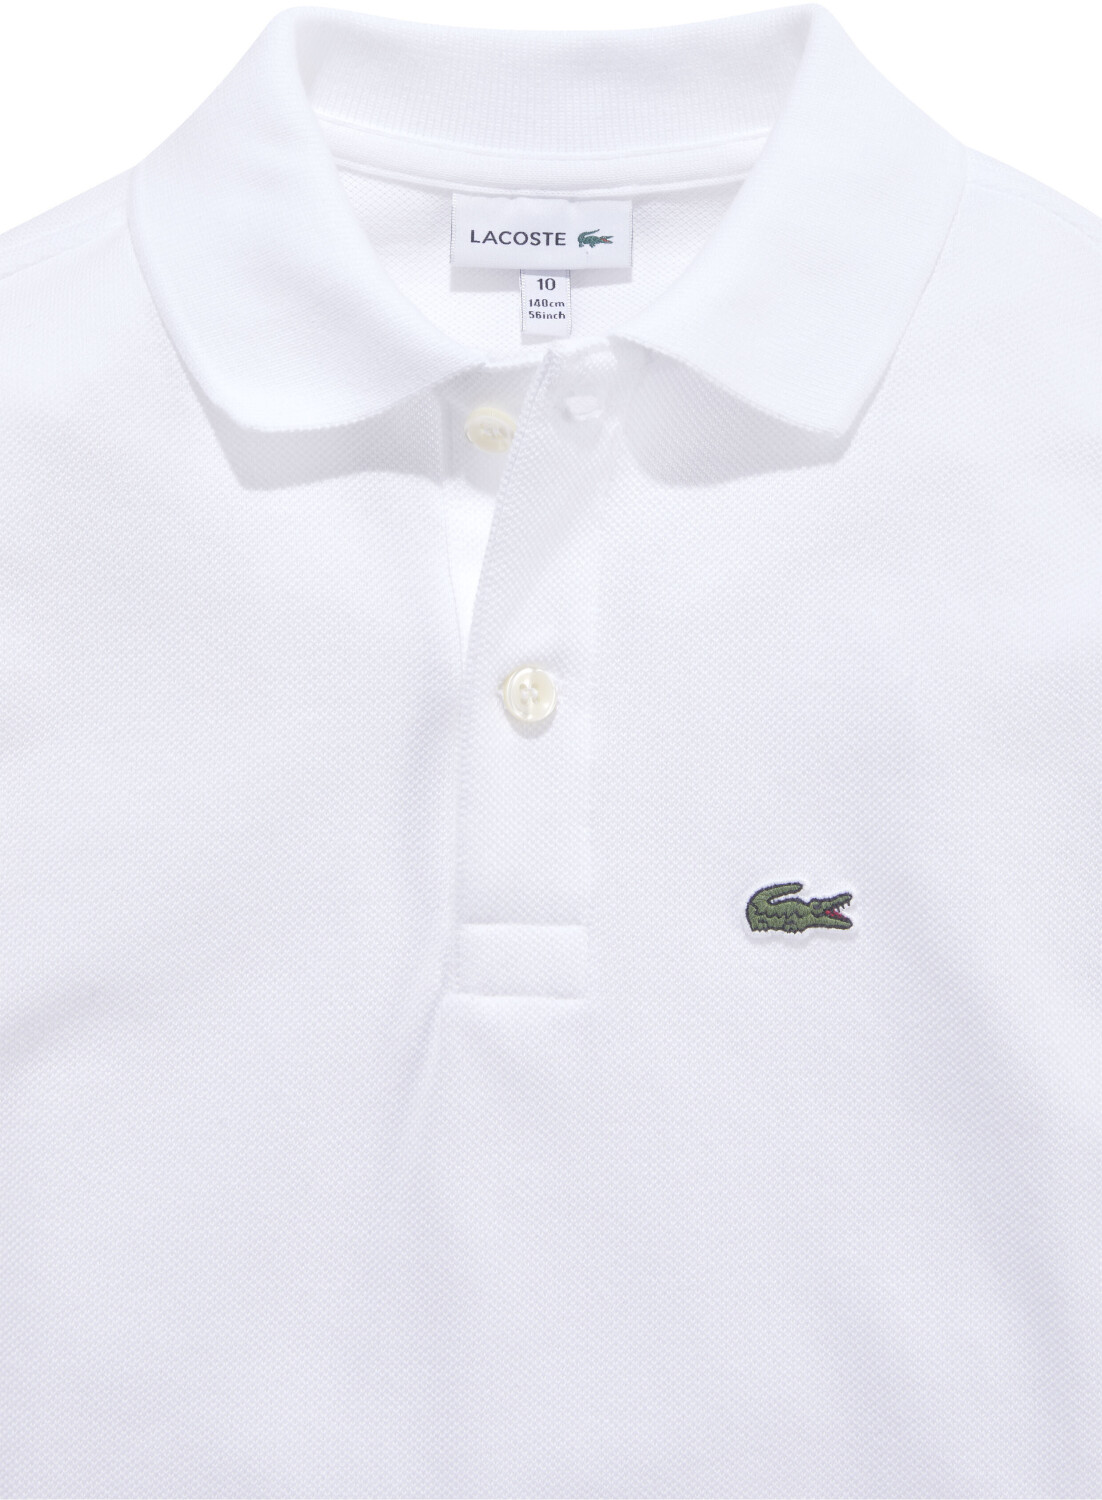 Lacoste Poloshirt (PJ8915-001) white 38,50 ab bei | Preisvergleich €